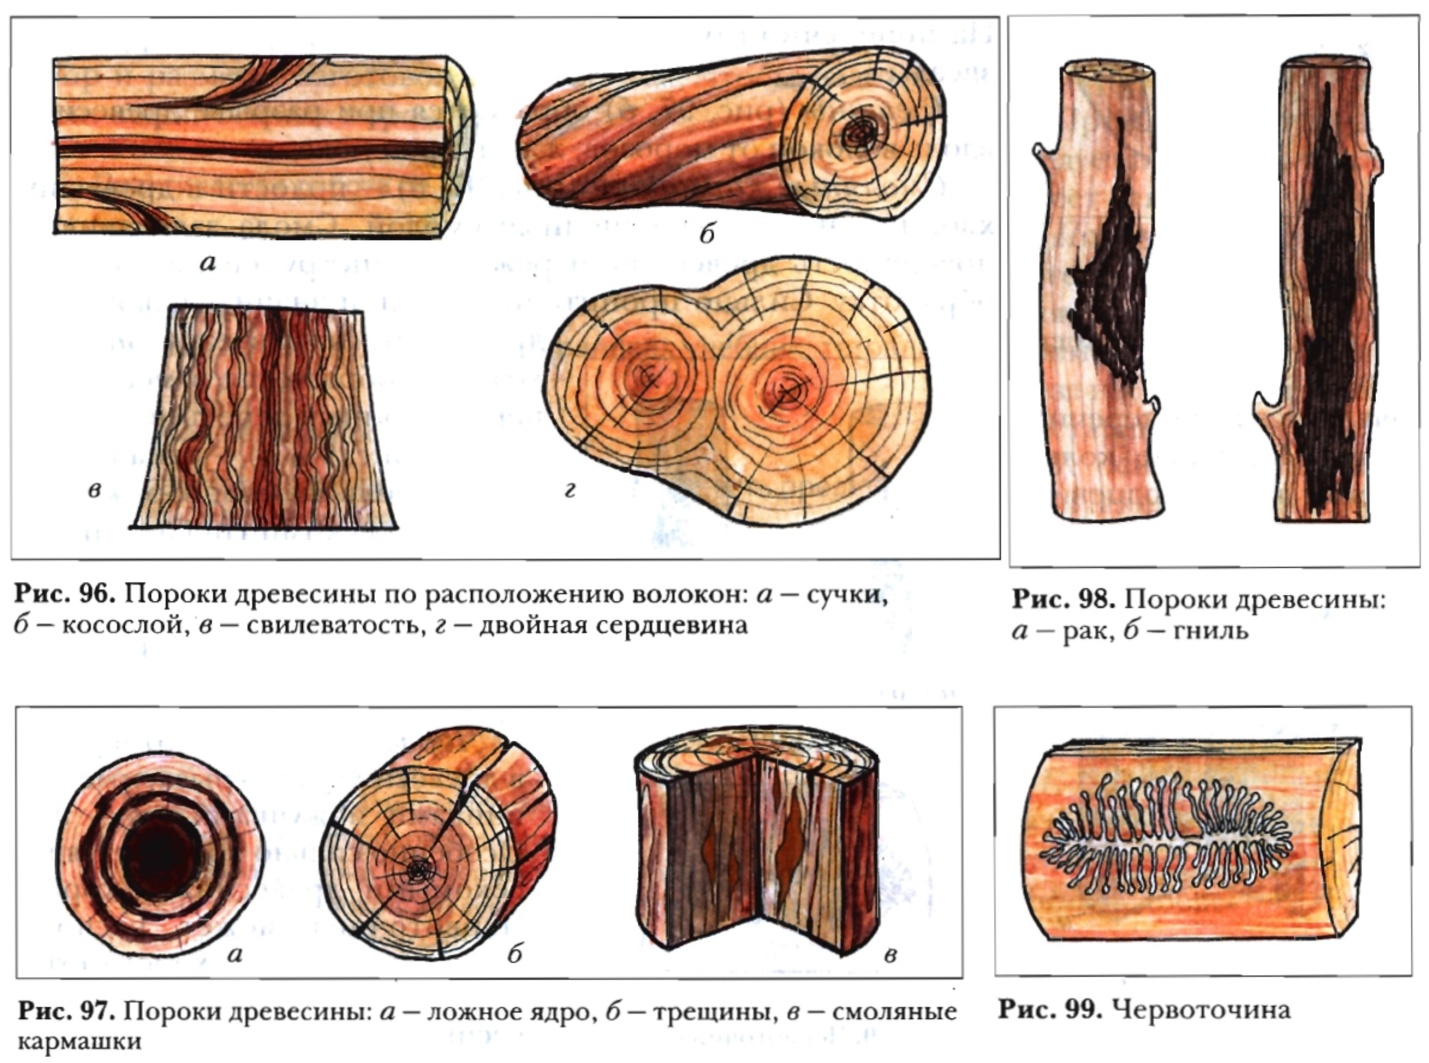 пороки строения древесины картинки